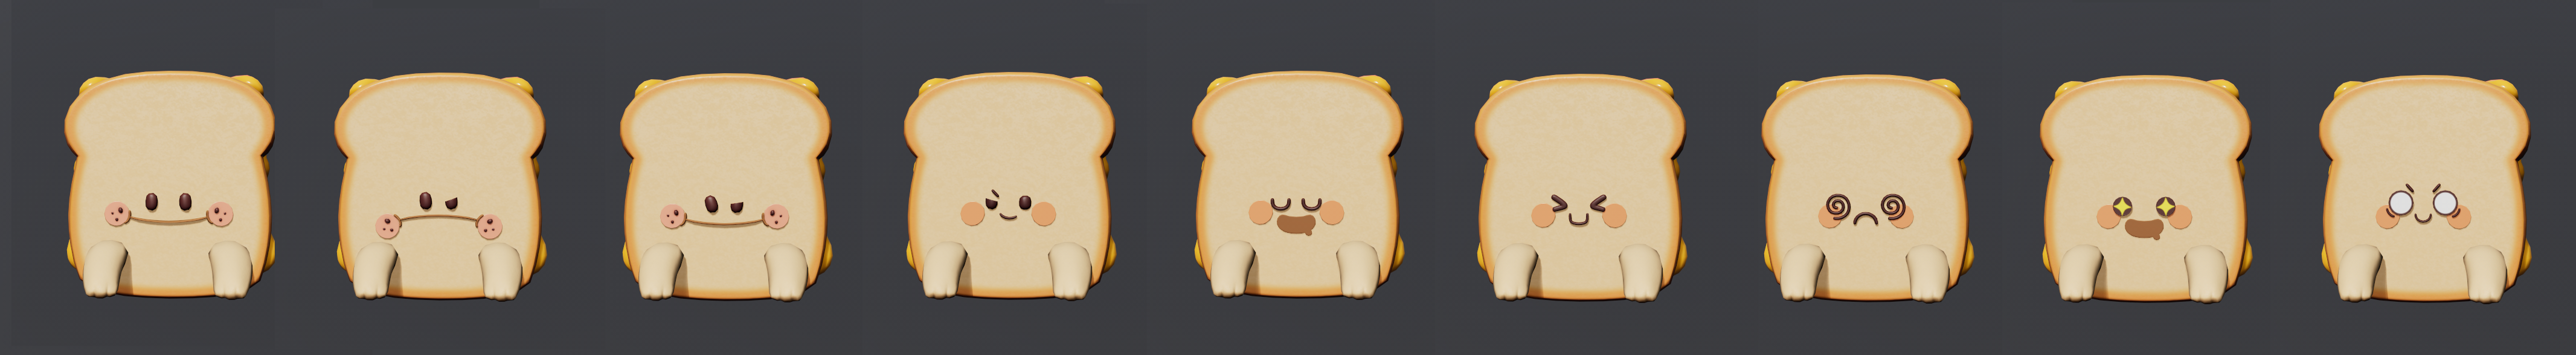 面包表情第一版截图.png